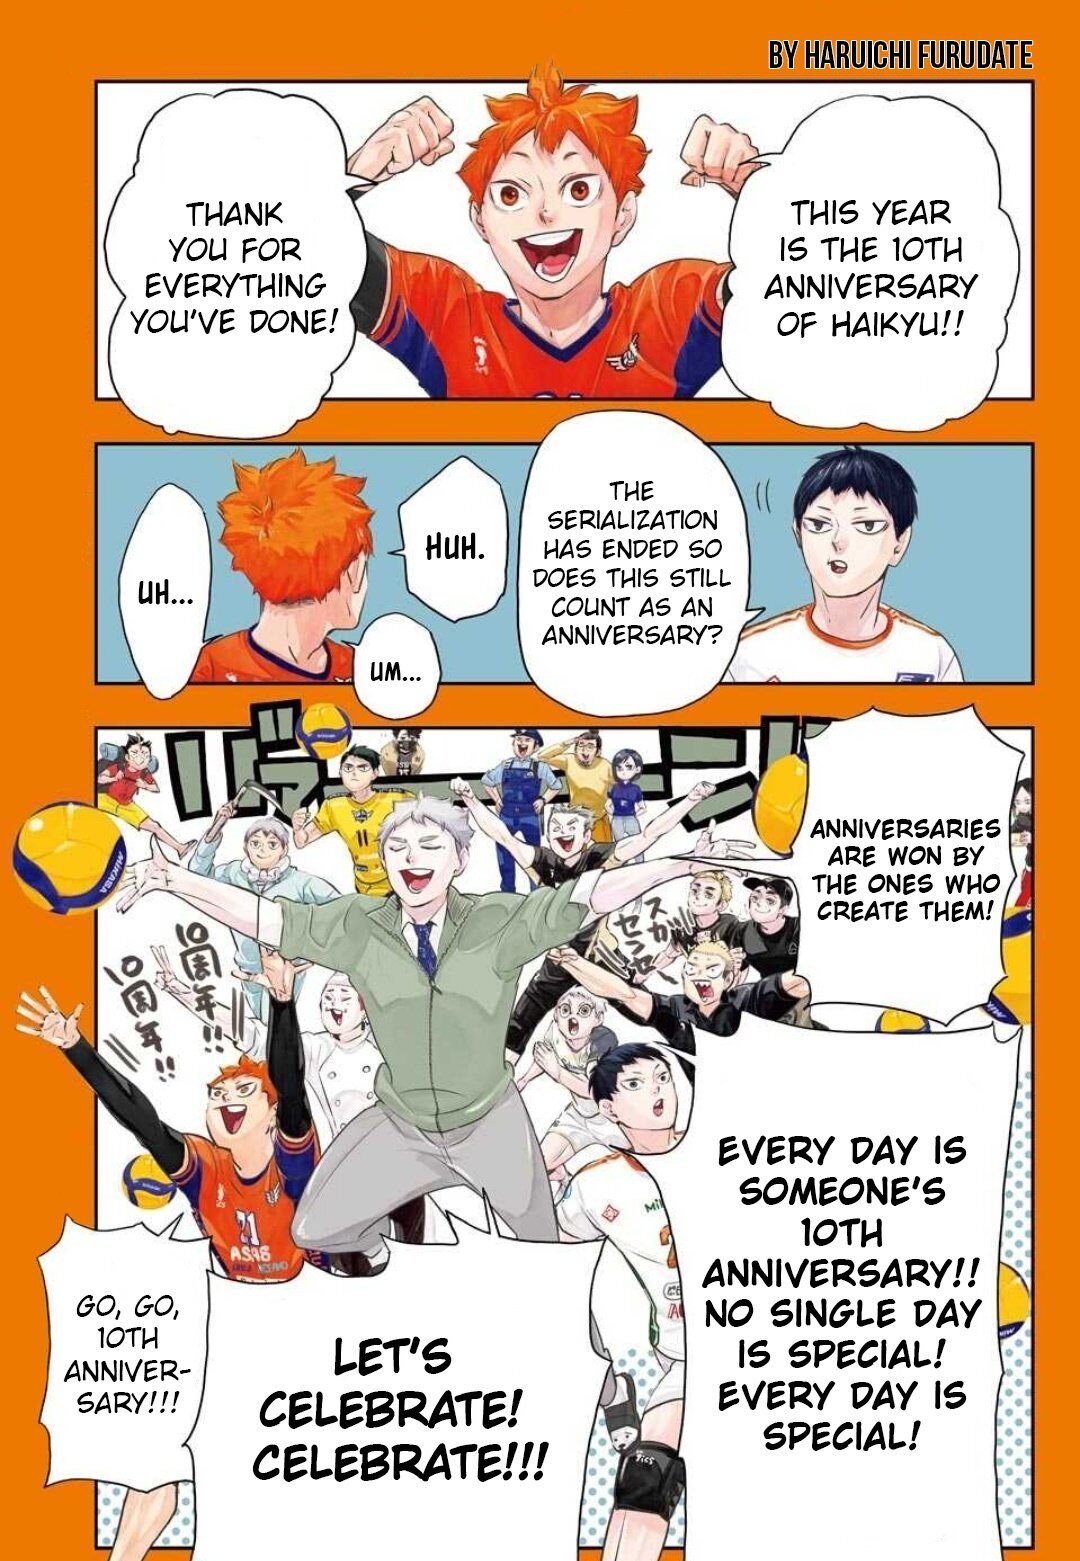 Haikyu!! to Release New Manga for 10th Anniversary